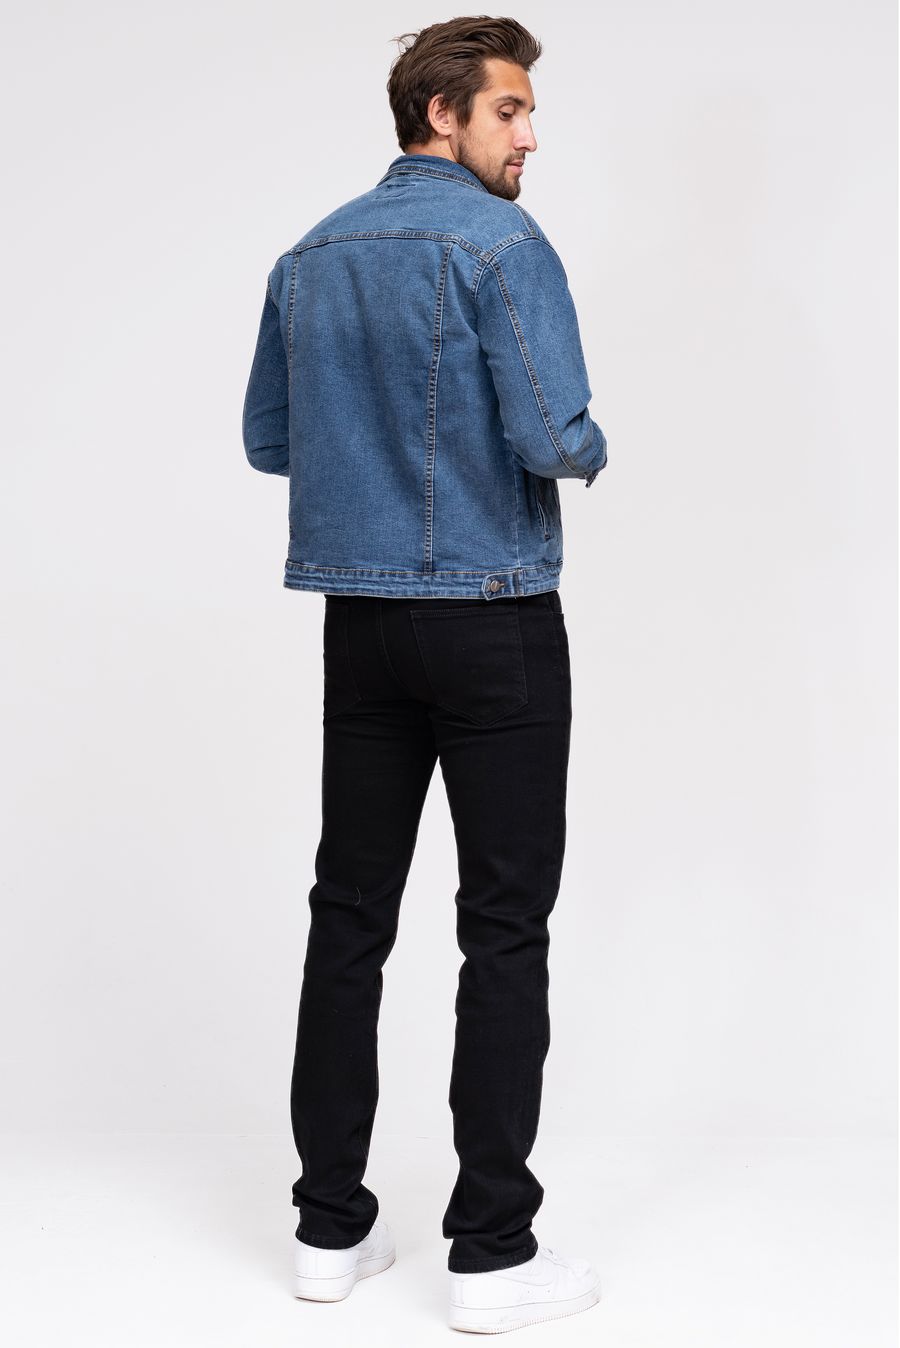 Пиджак мужской (джинсовка) LRZBS 2360 - фото 3